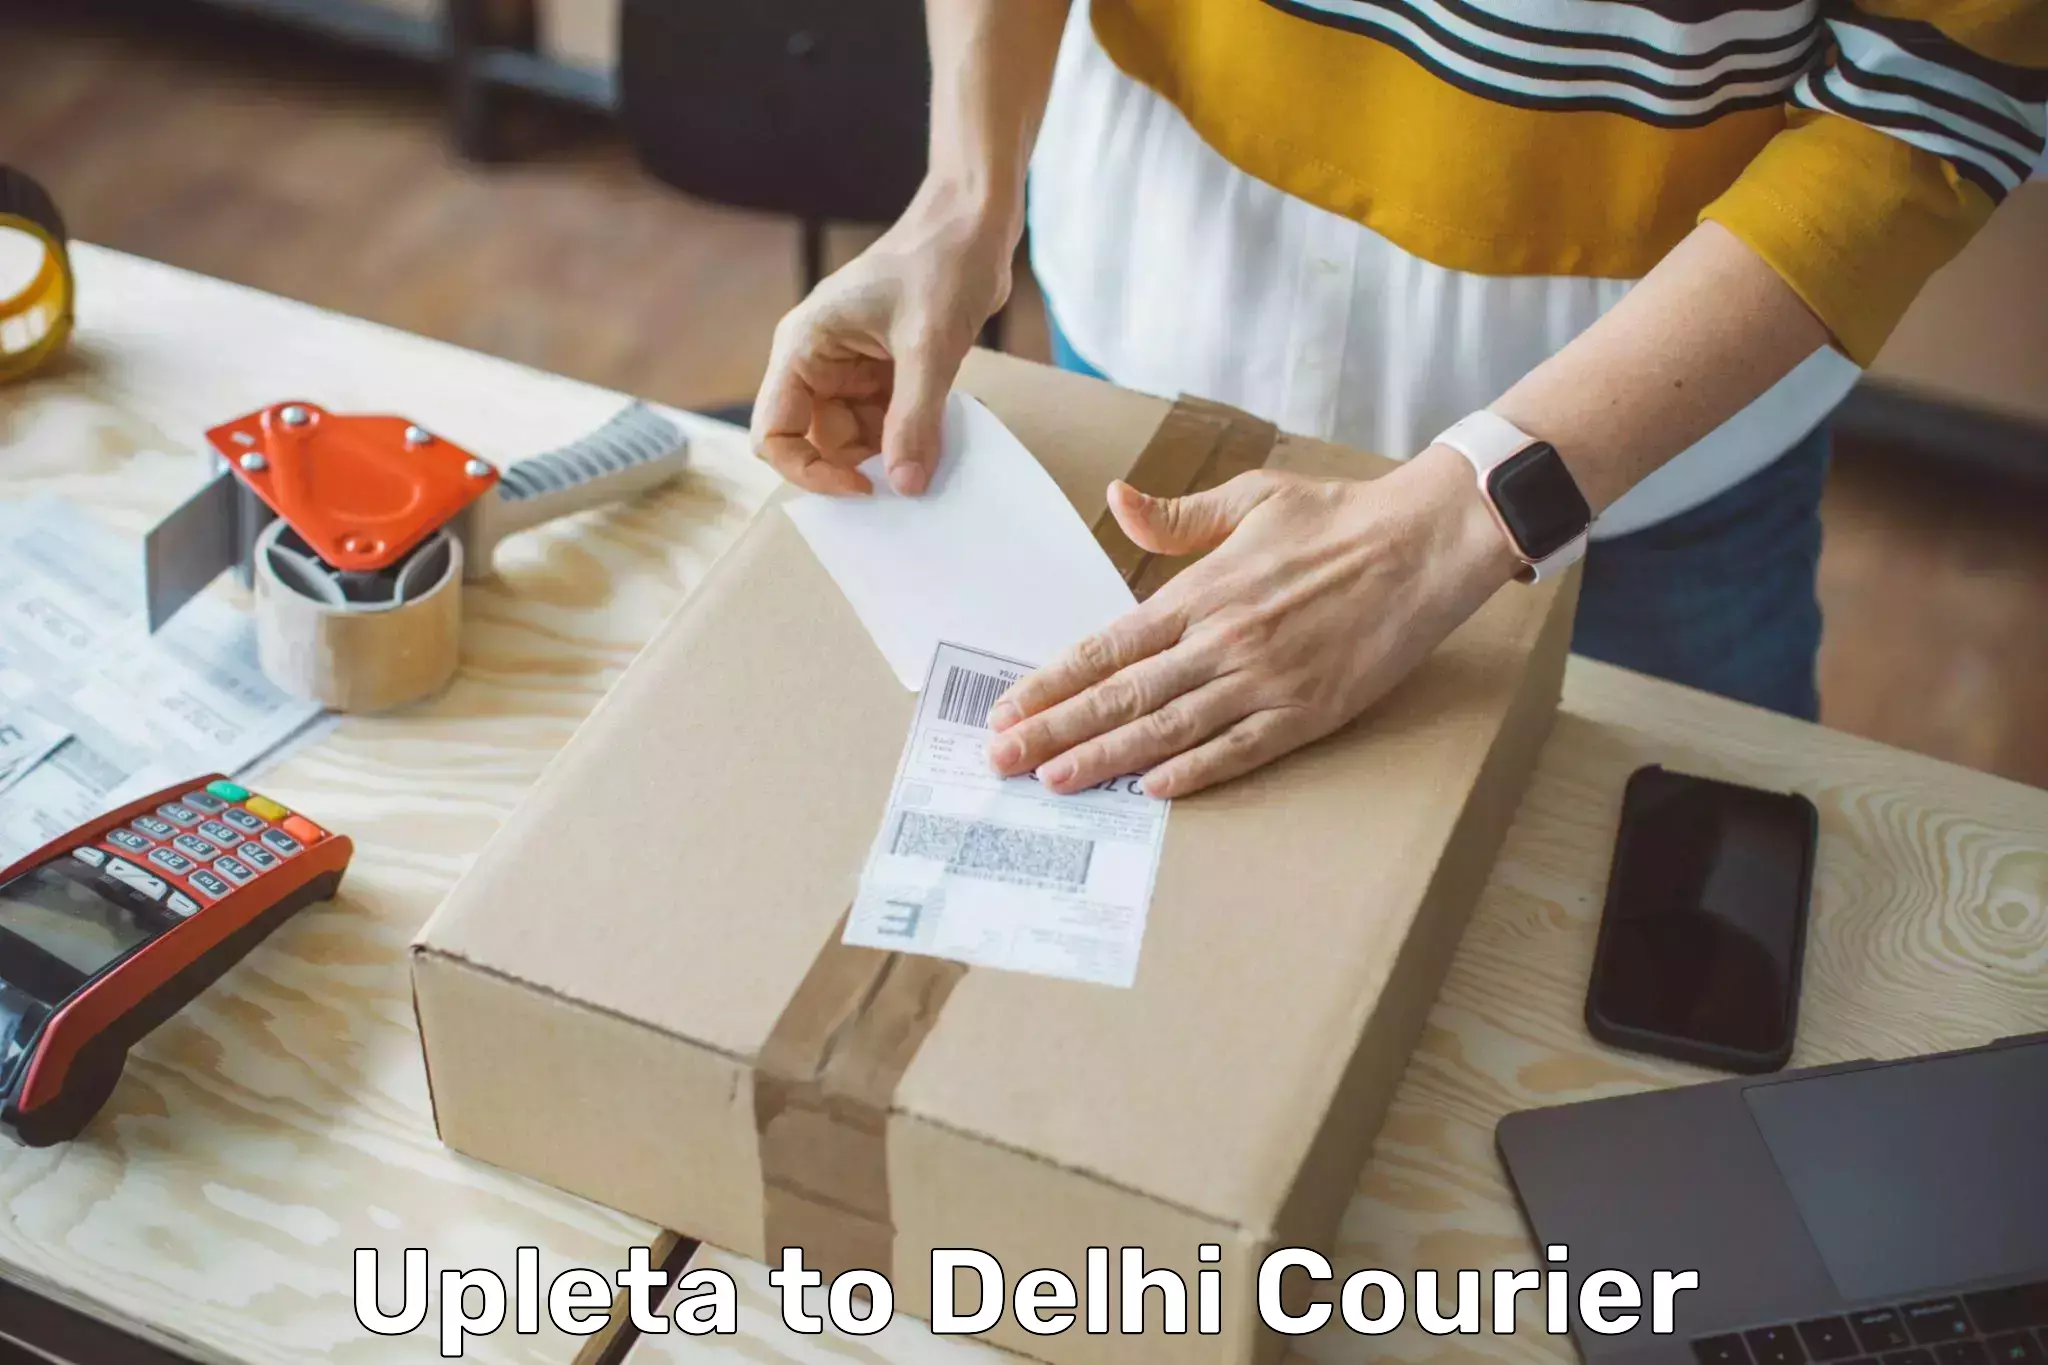 Local delivery service Upleta to Delhi